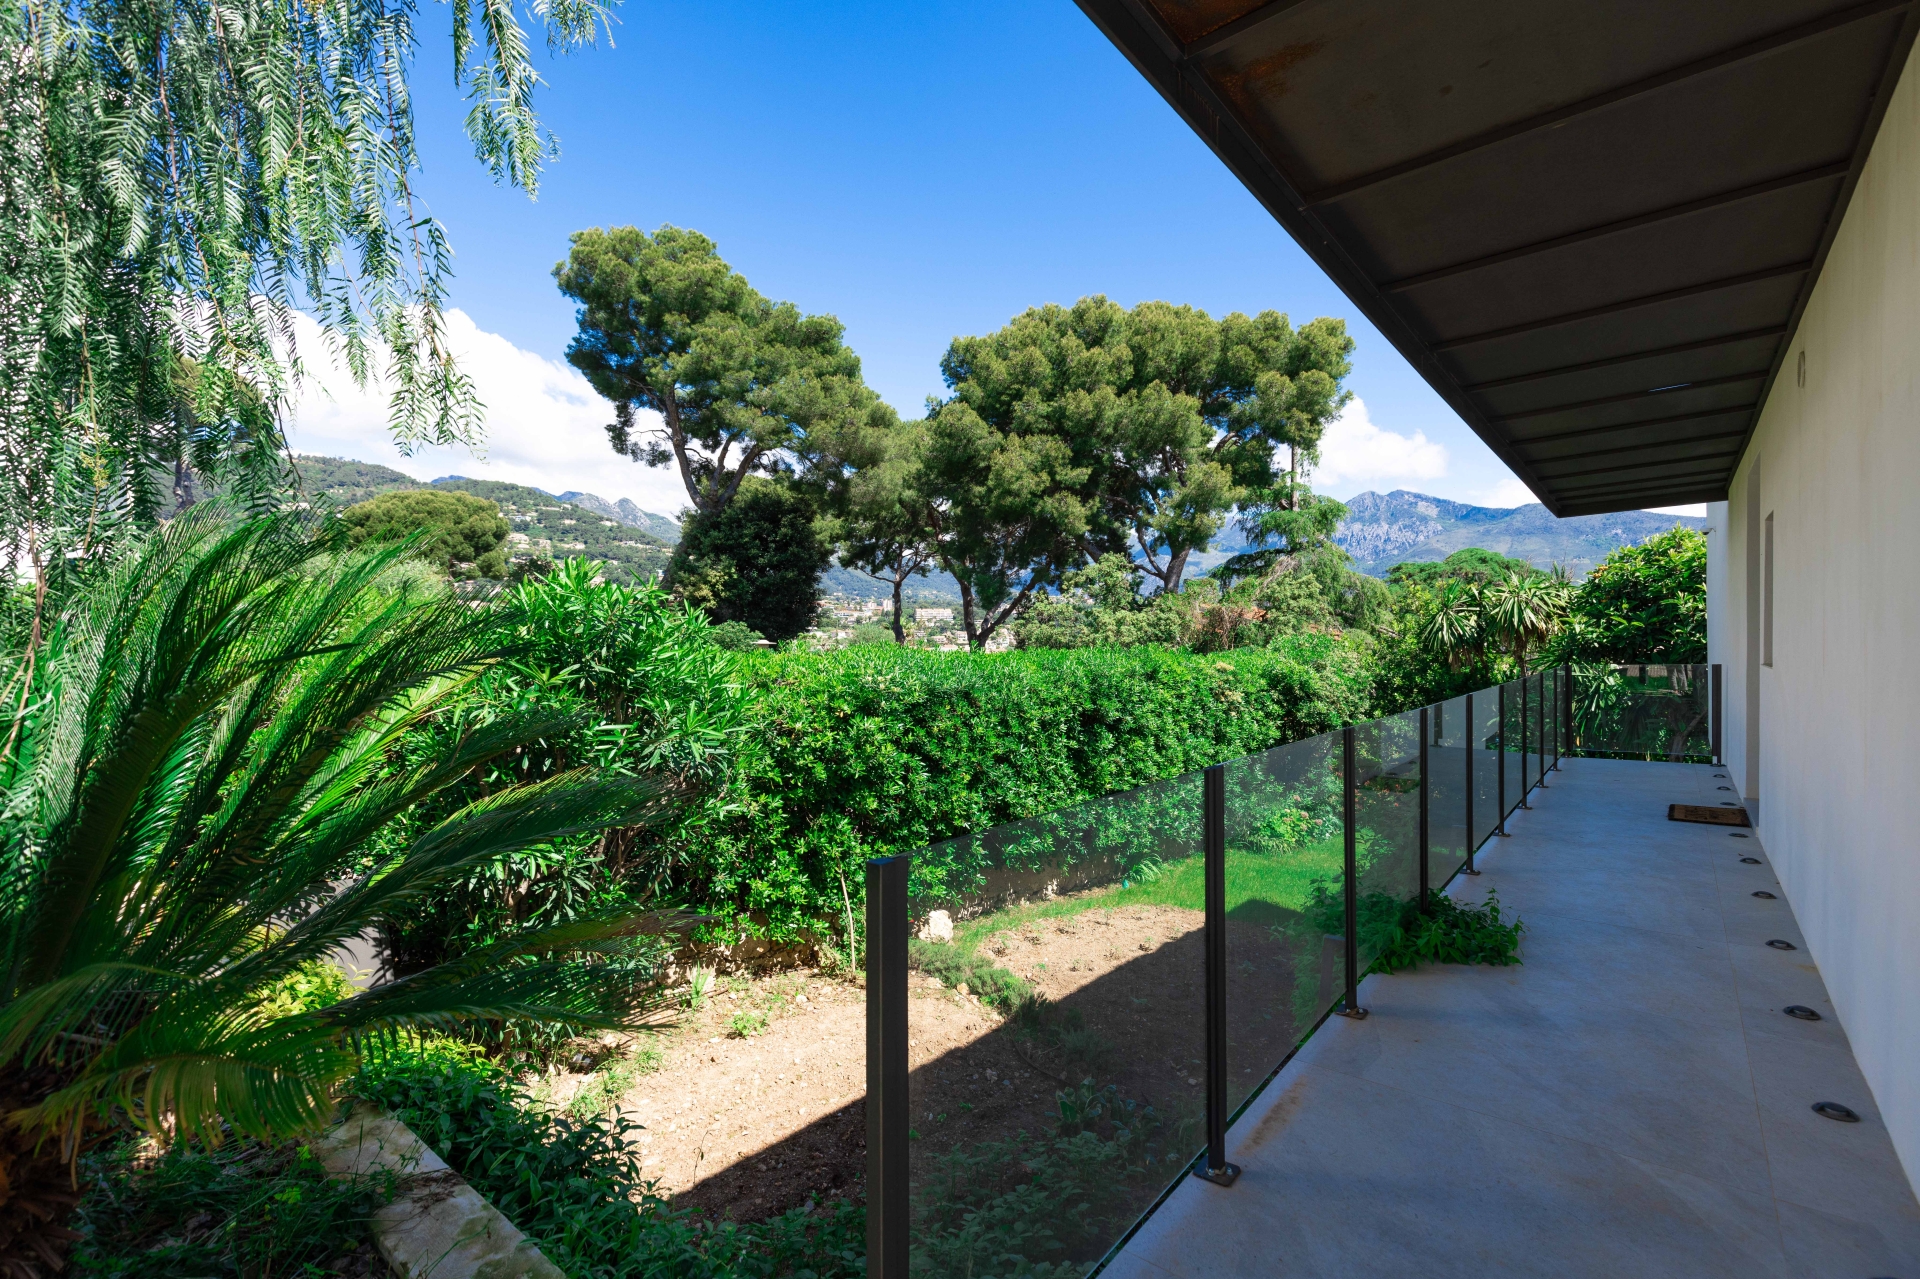 Dotta Villa a vendre - VILLA STECYA - Roquebrune-Cap-Martin - Roquebrune-Cap-Martin - img074a5182